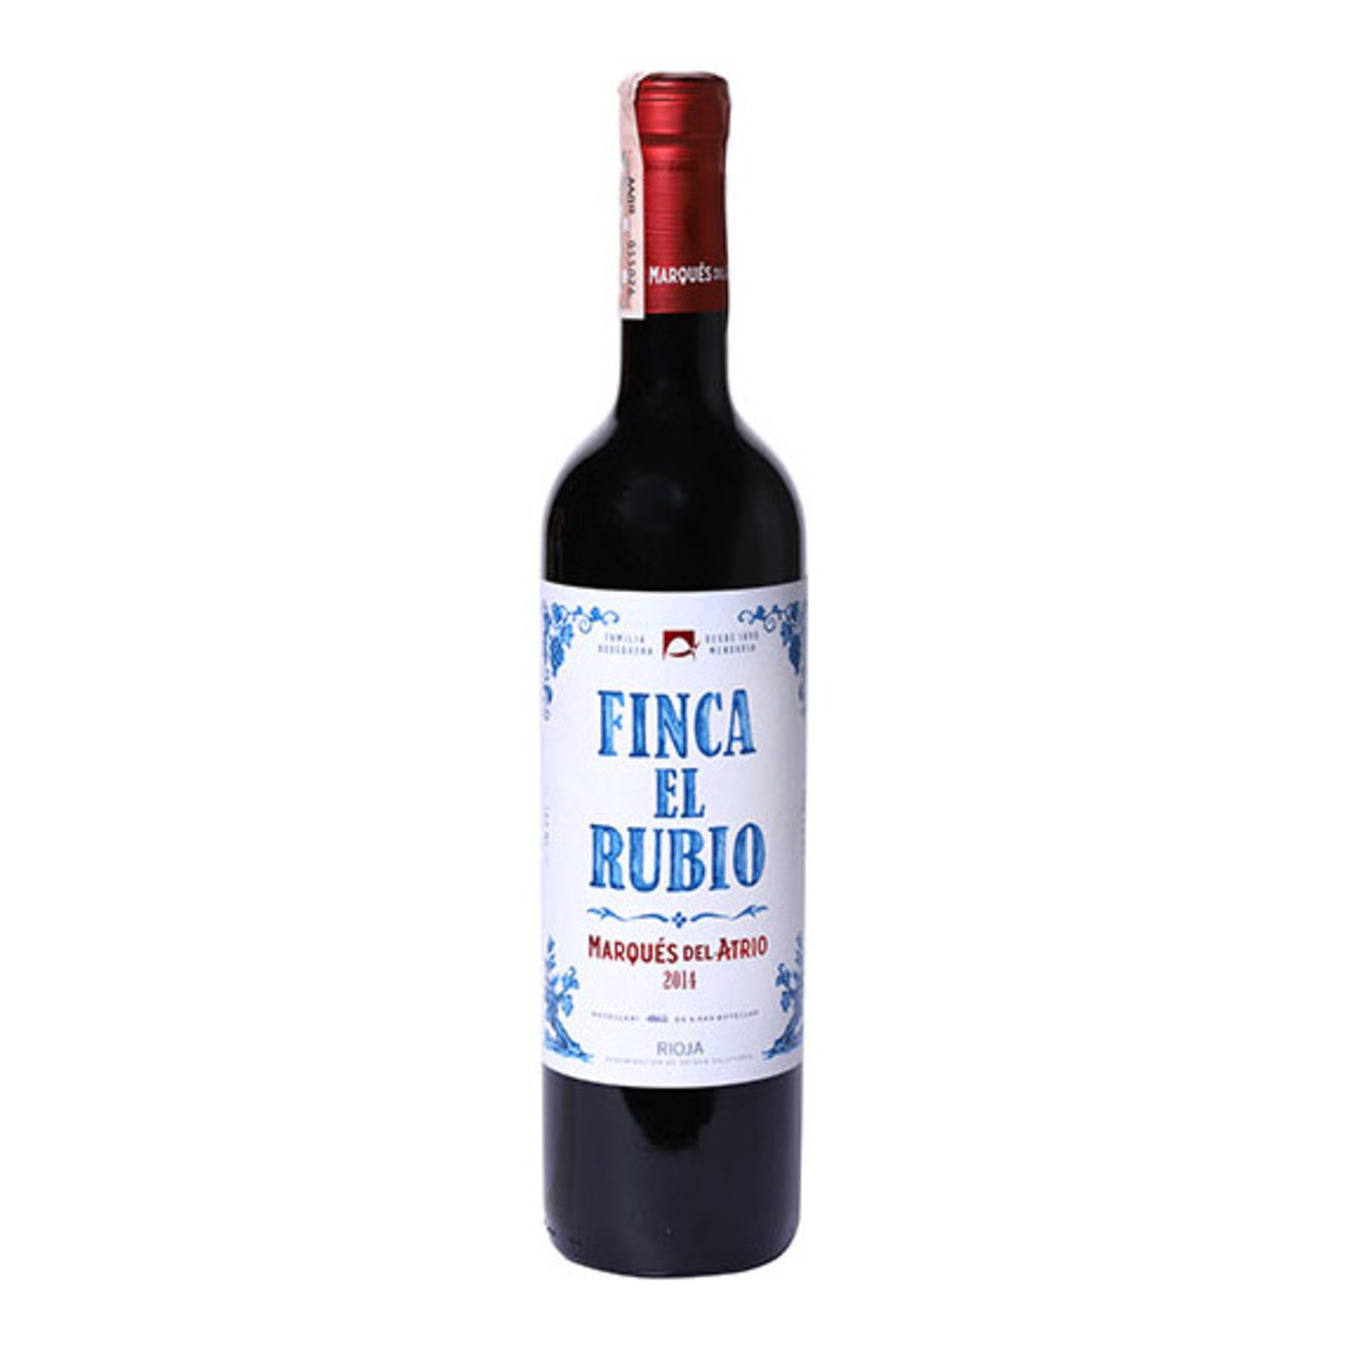 Marques del Atrio Finca El Rubio DOC Rioja red dry wine 13,5% 0,75l